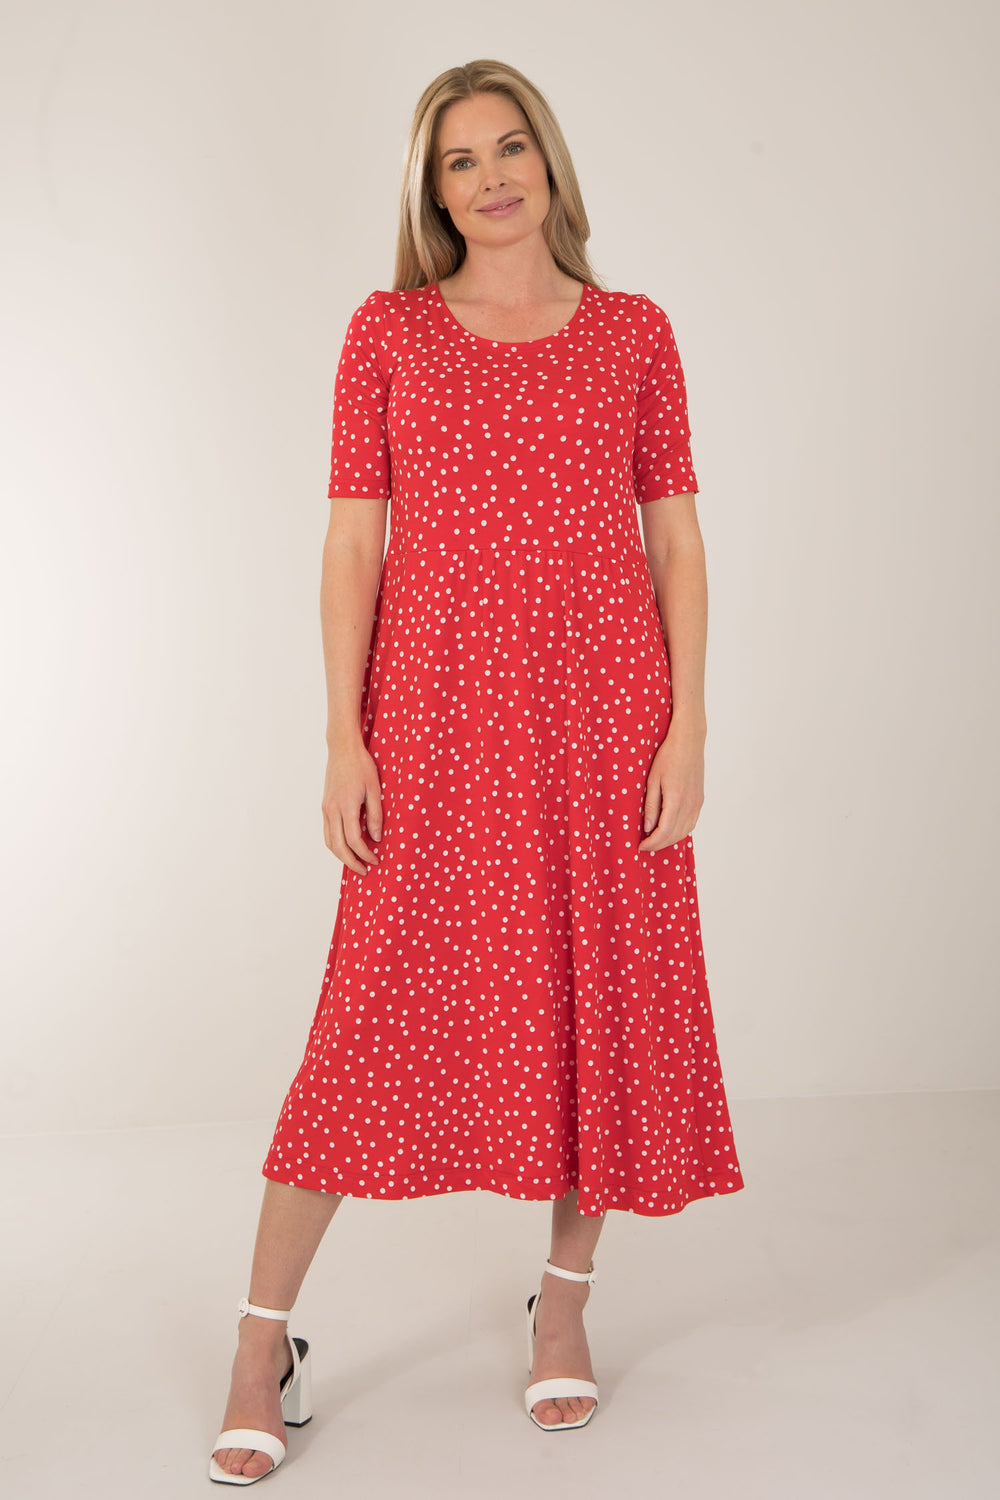 Ideal printed midi jersey dress - Red dot - Vadlång, prickig klänning i trikå